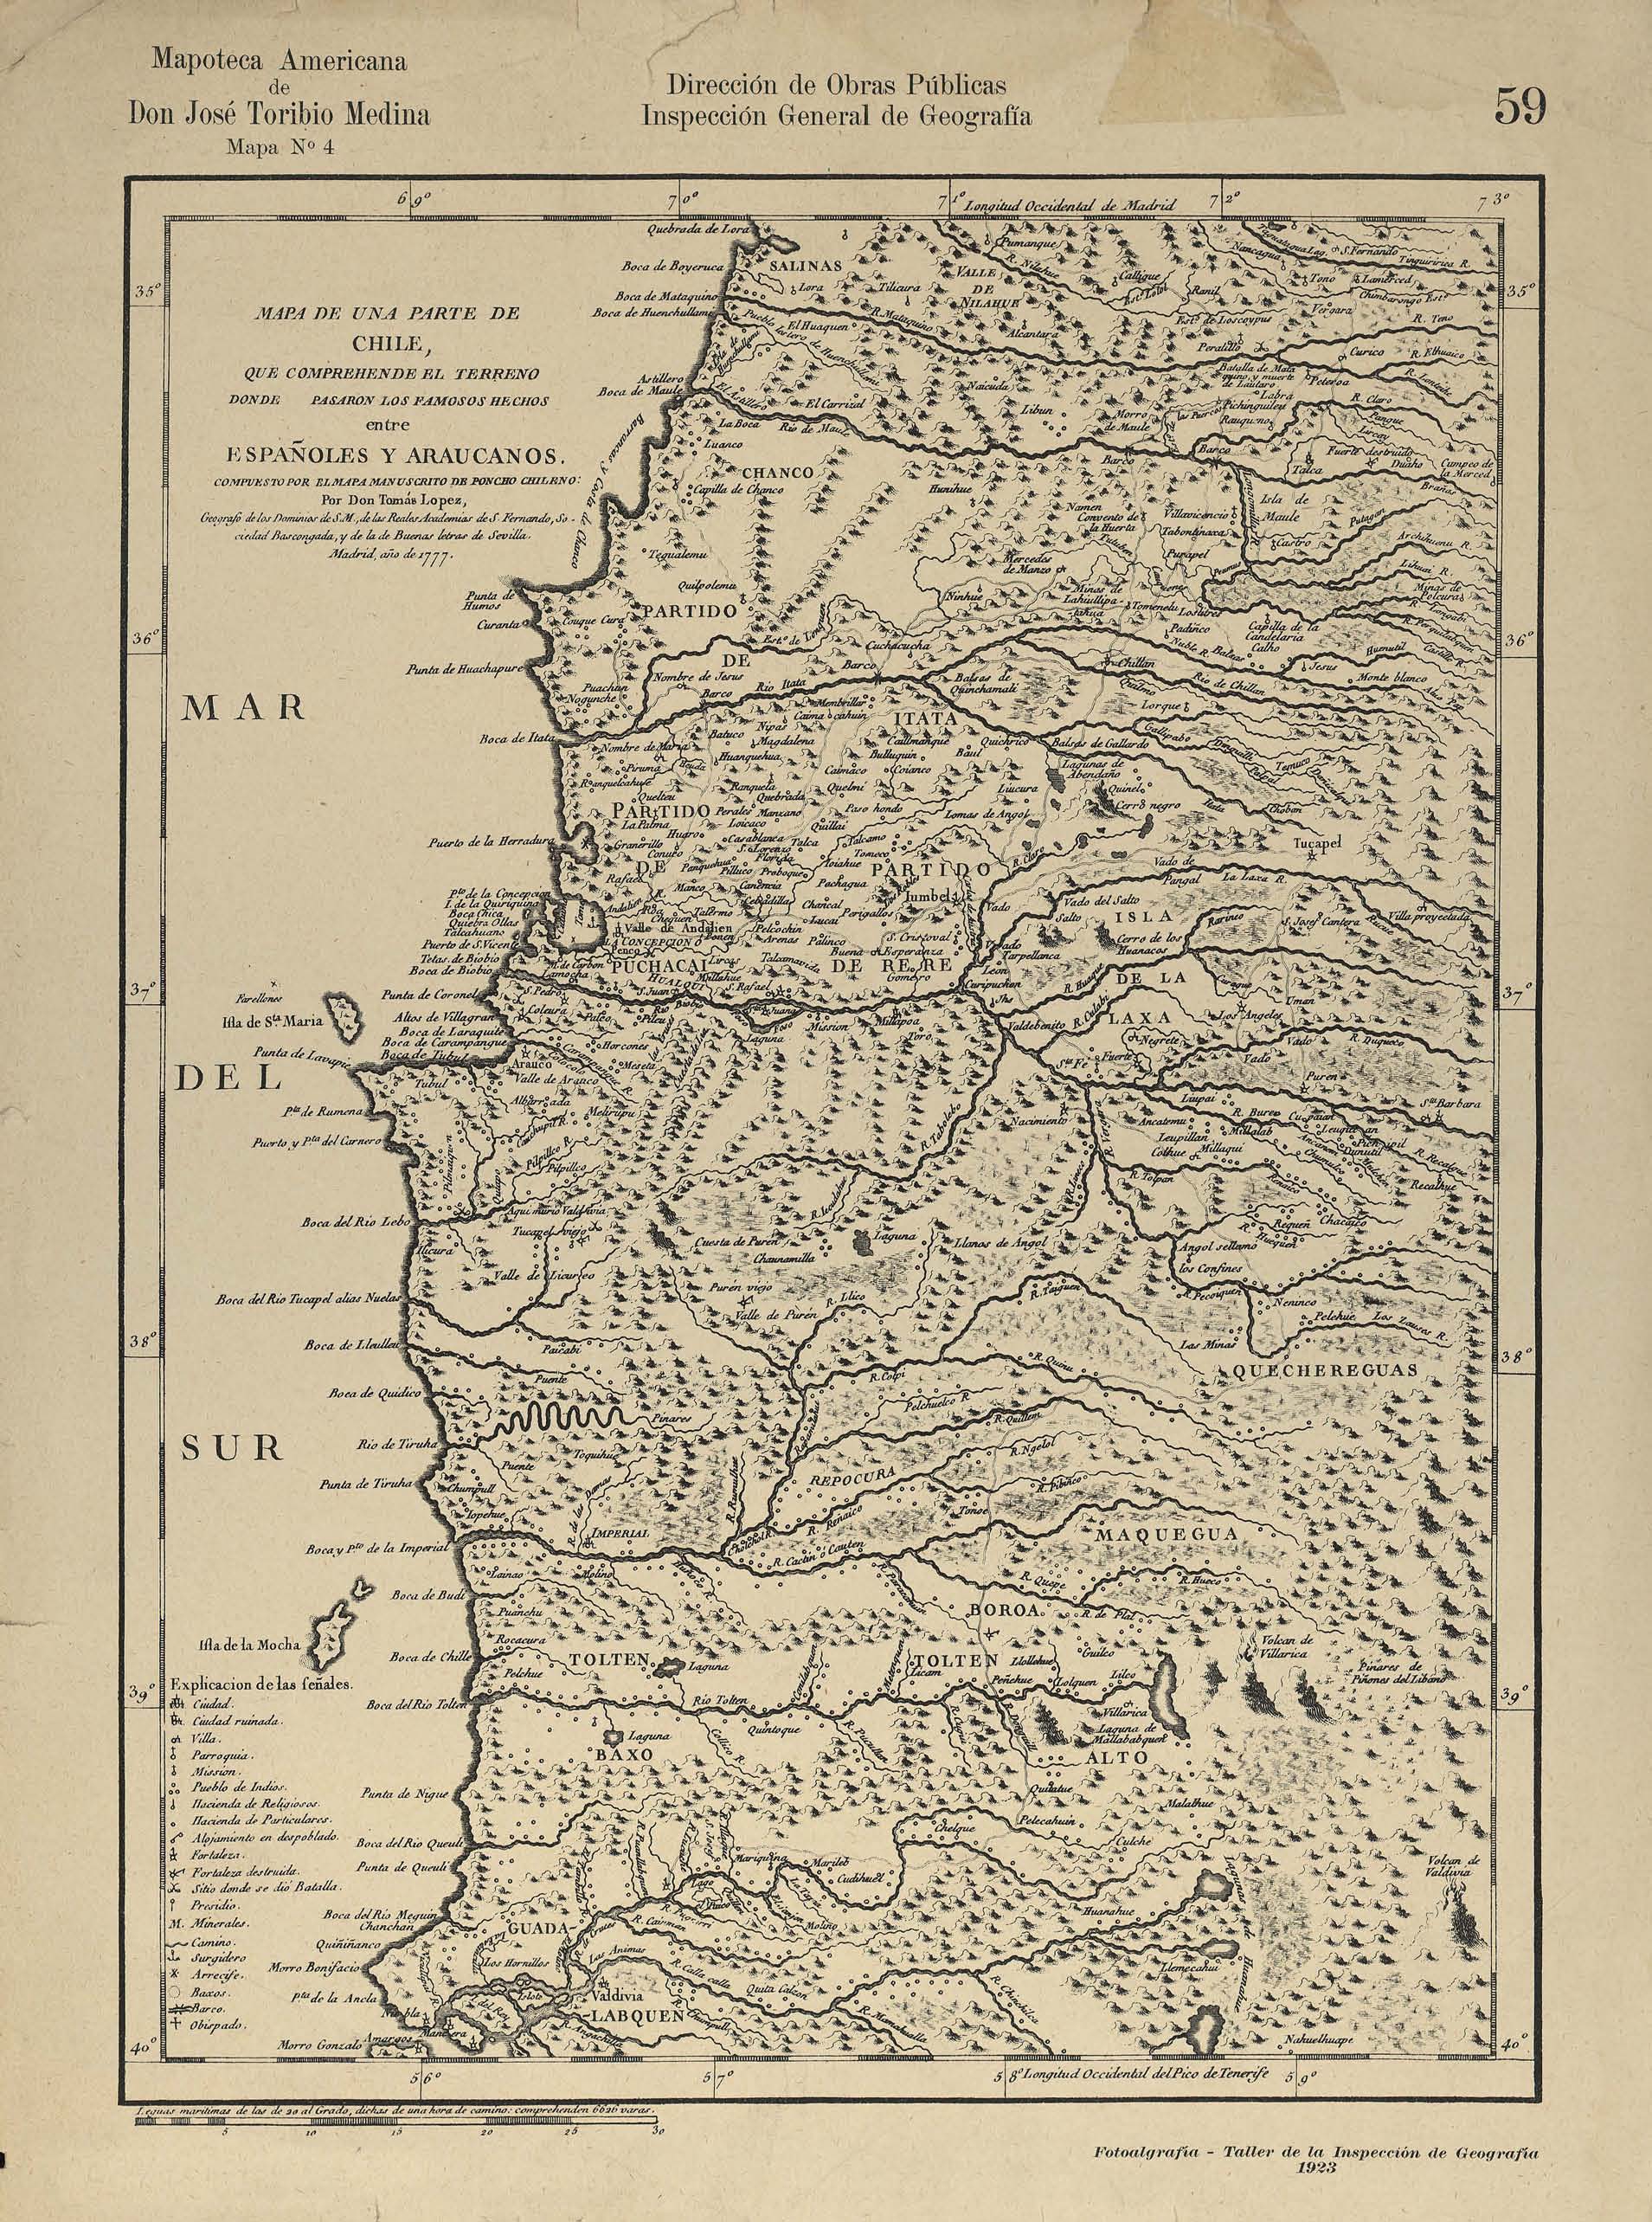 Mapa de una parte de Chile que comprehende el terreno donde pasaron los famosos hechos entre españoles y araucanos [material cartográfico]